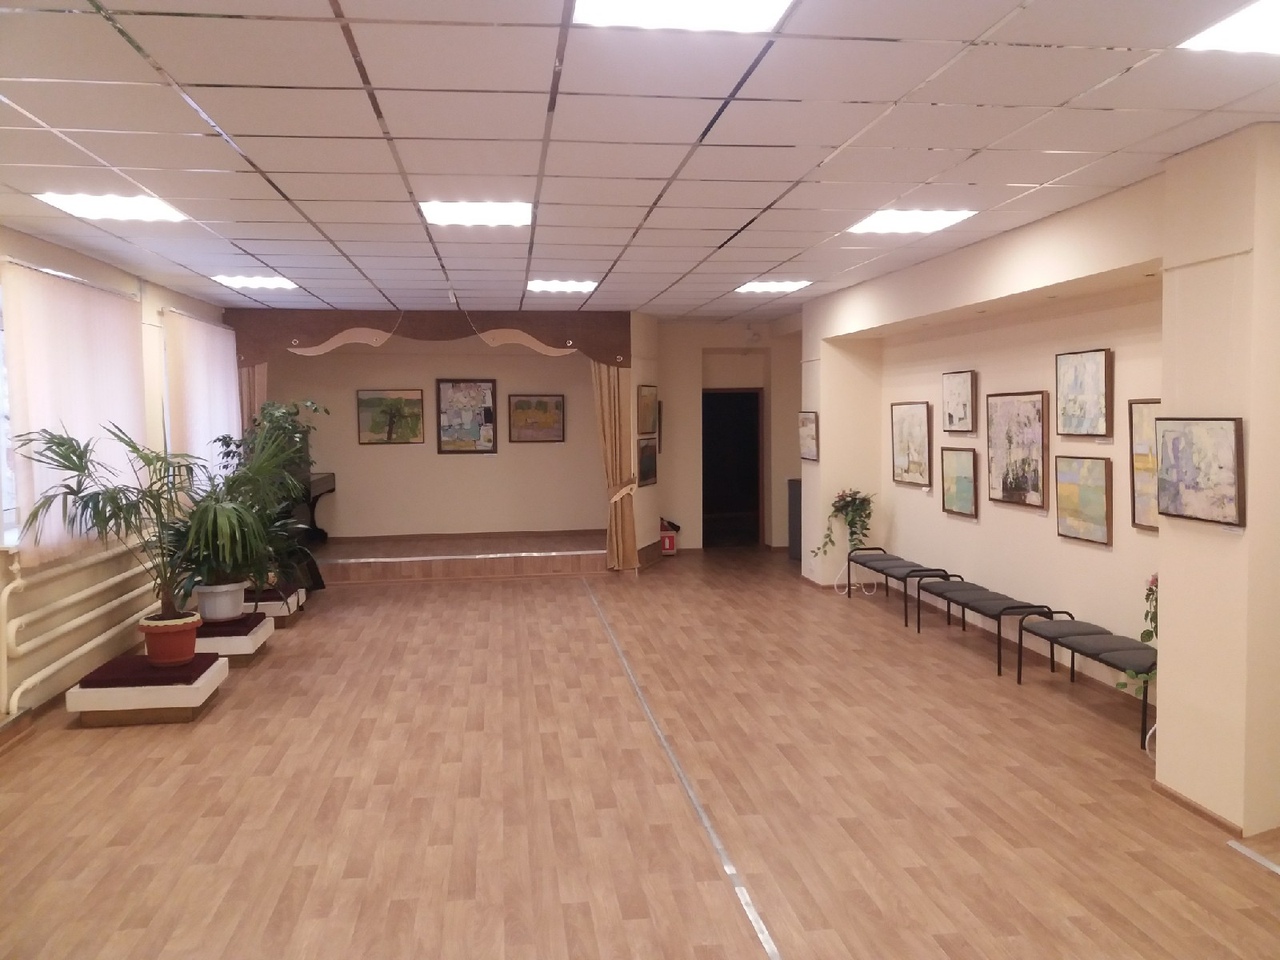 Обновленный Унечский краеведческий музей ждёт посетителей!